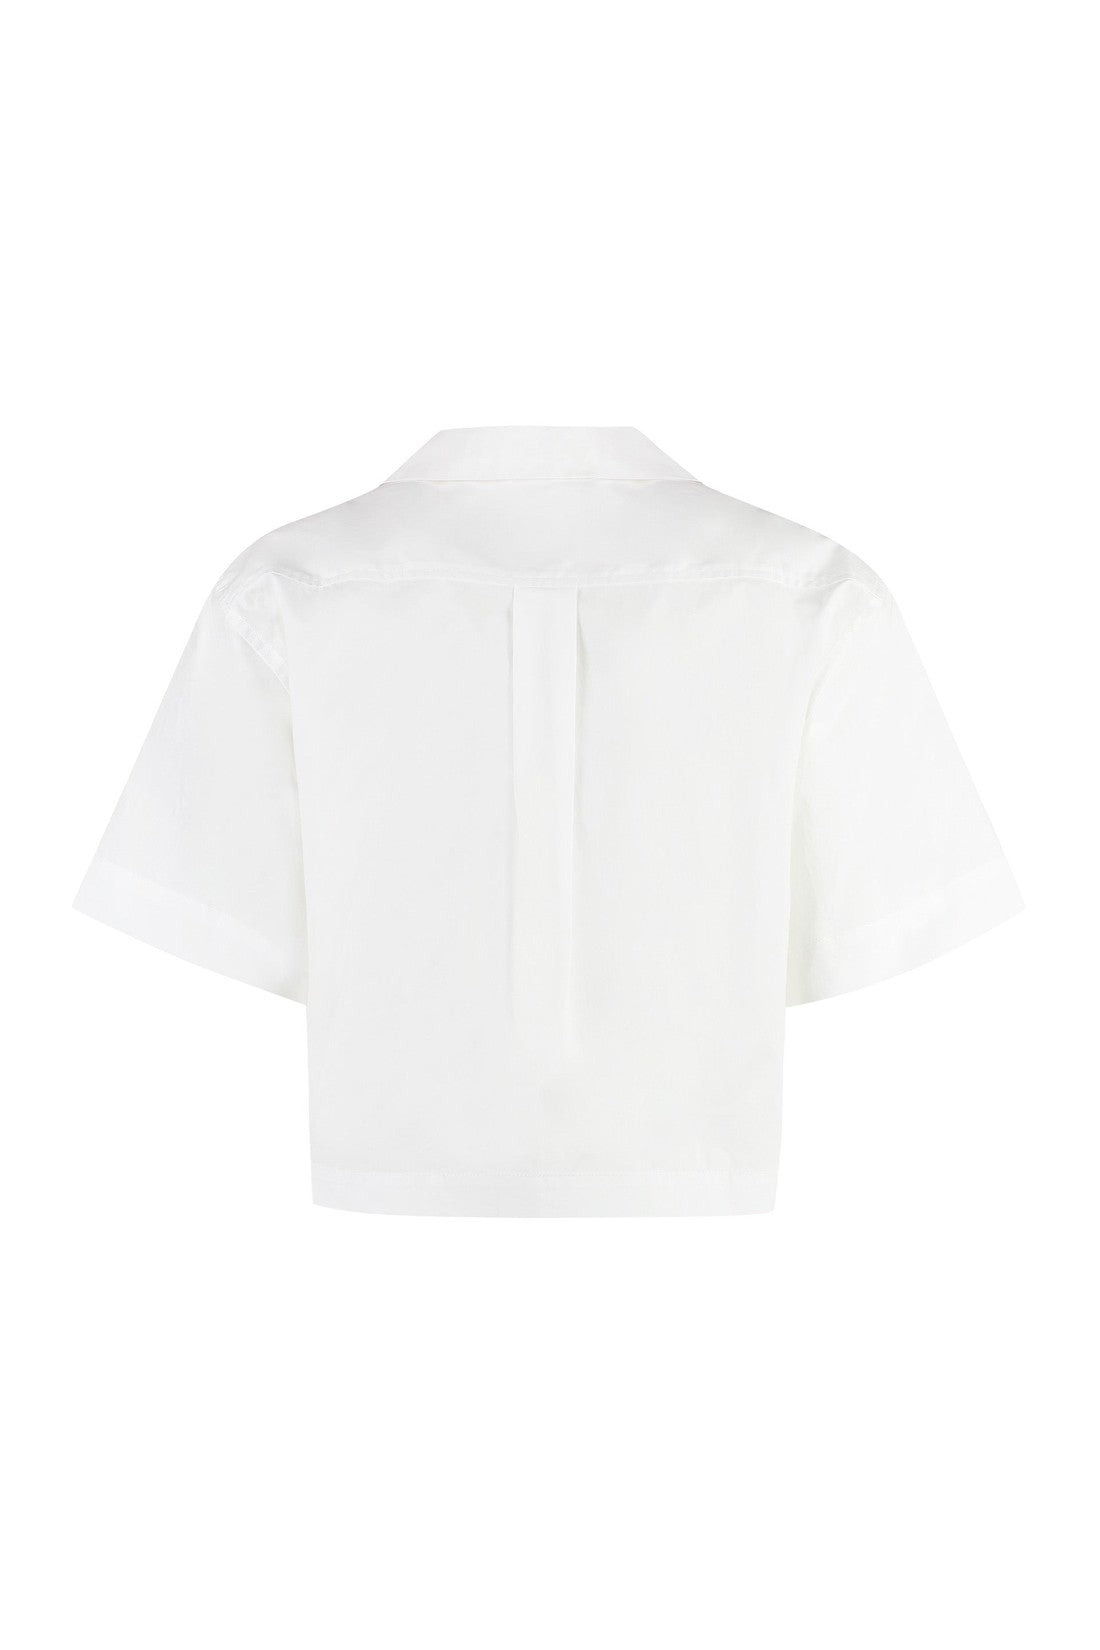 EQUIPMENT-OUTLET-SALE-Short sleeve cotton shirt-ARCHIVIST